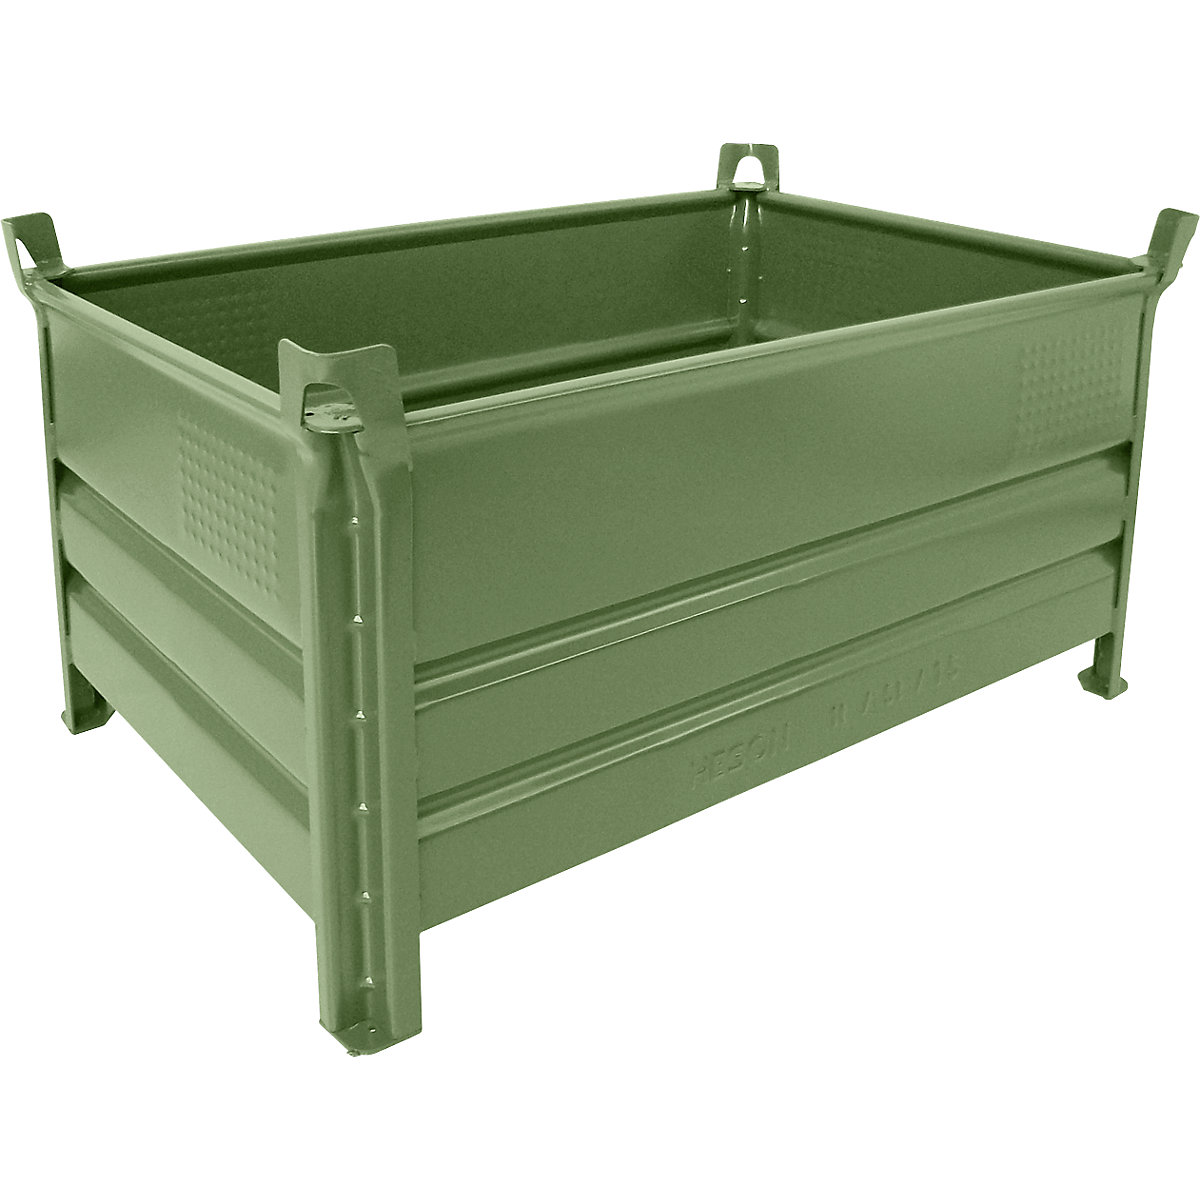 Teli falú rakásolható tároló – Heson, szé x h 800 x 1200 mm, teherbírás 500 kg, zöld, 5 db-tól-5